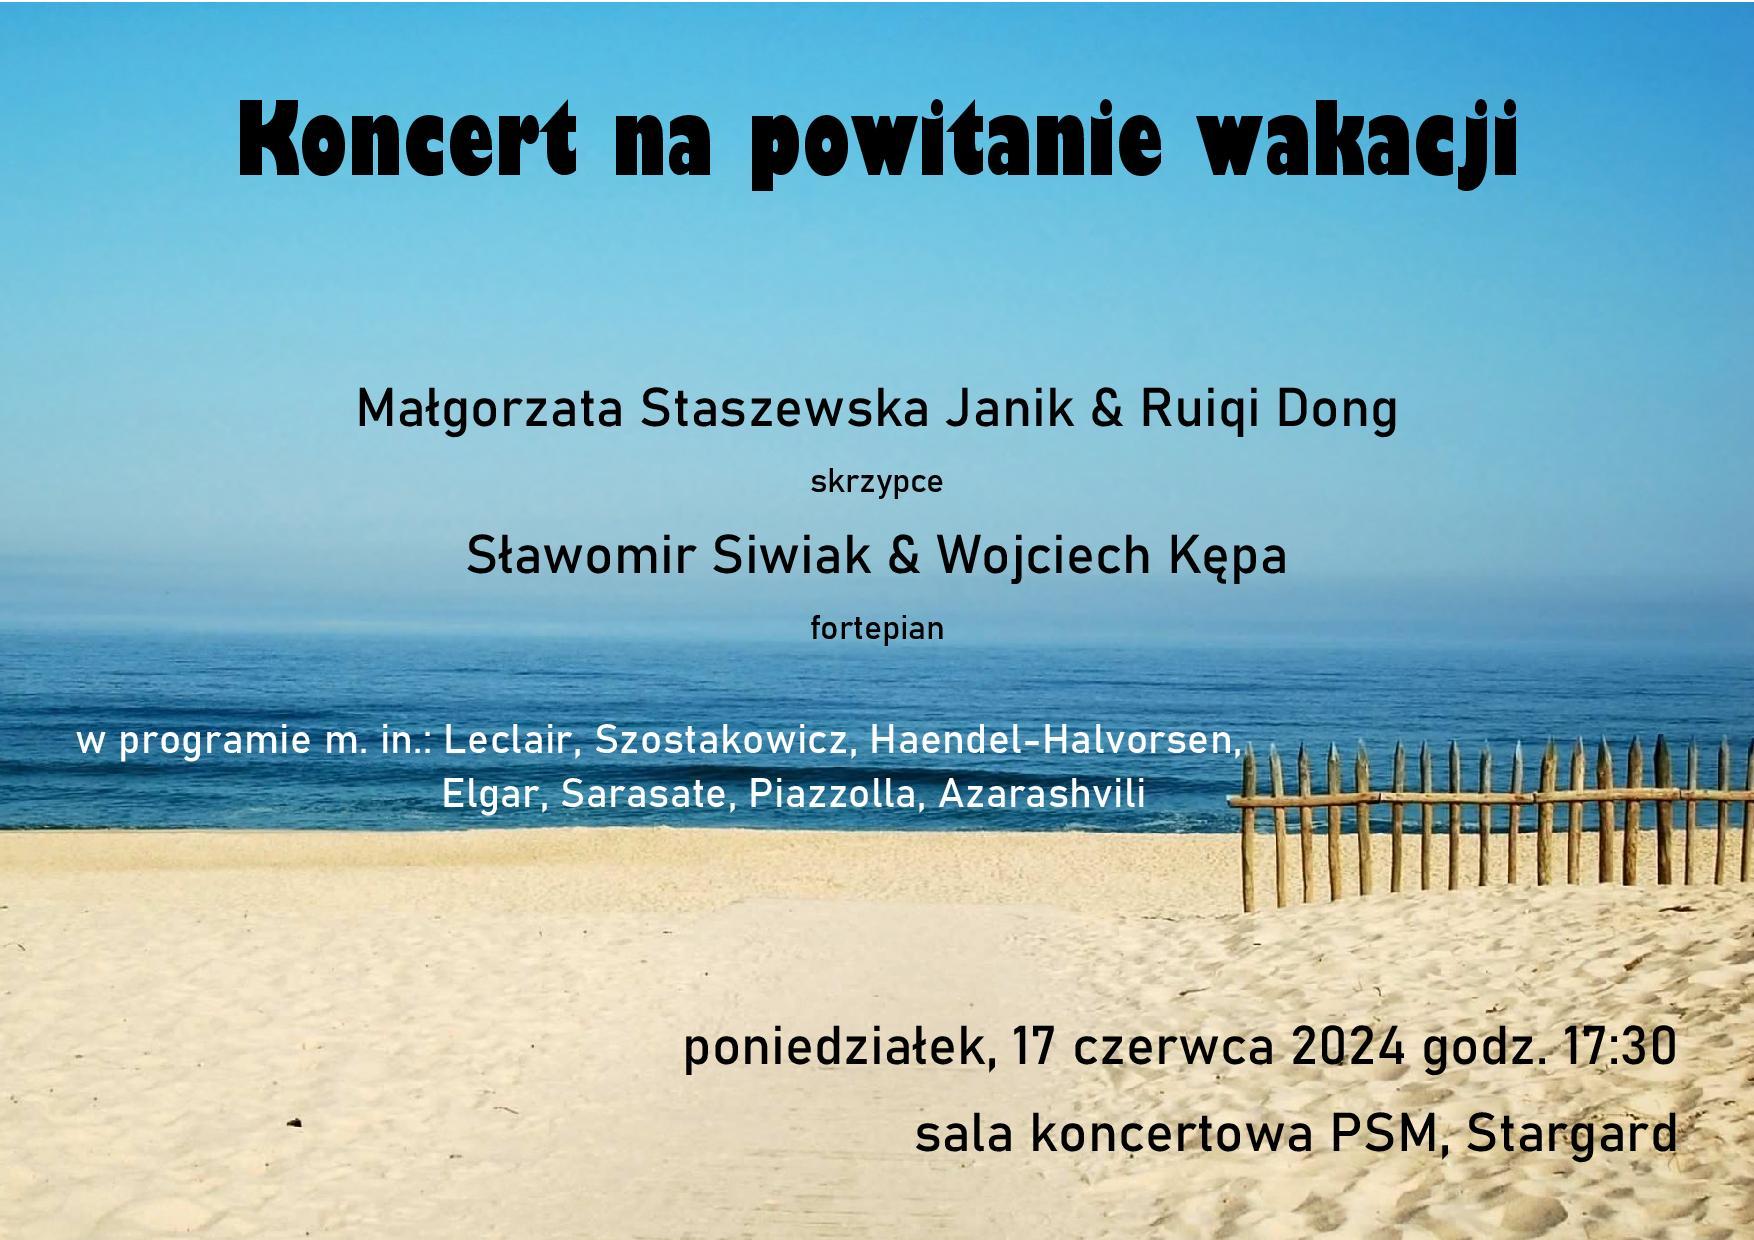 Plakat koncertu na powitanie wakacji w dniu 17 czerwca 2024 0 godzinie 17.30. Tłem plakatu jest zdjęcie plaży i morza. 